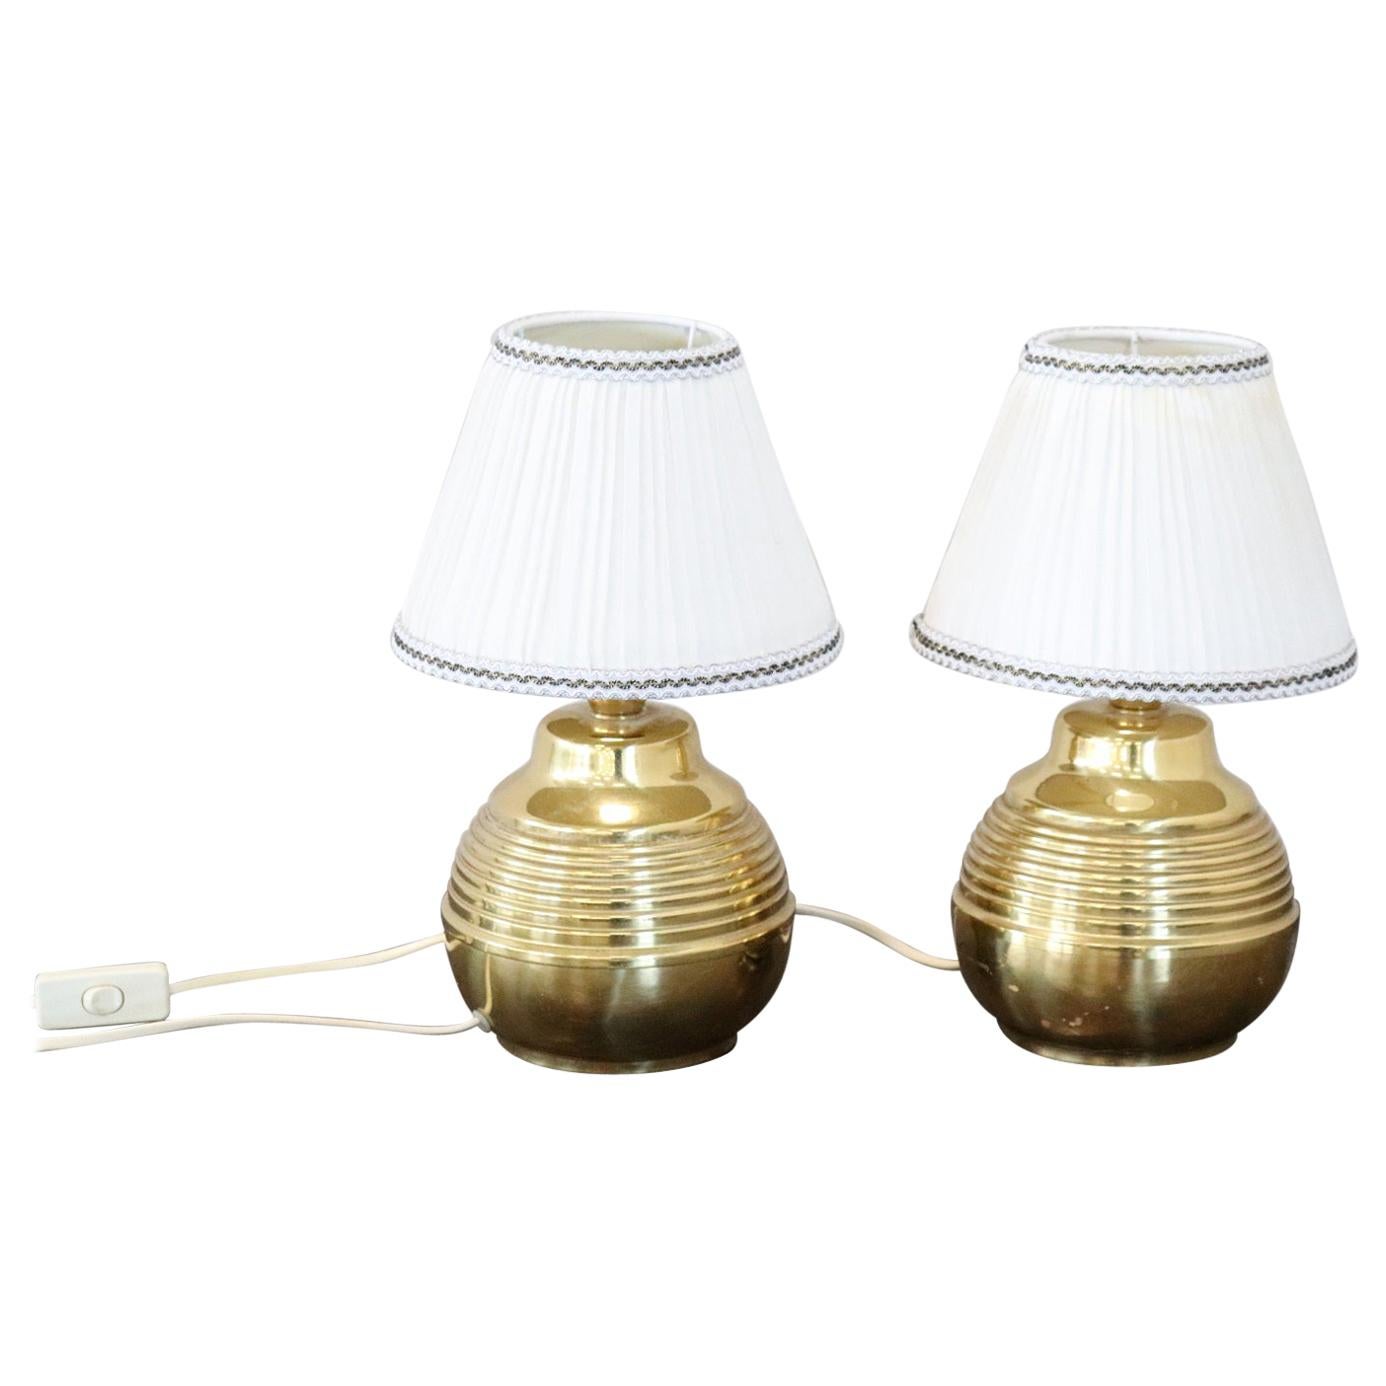 20th Century Italian Golden Brass Pair of Table Lamp